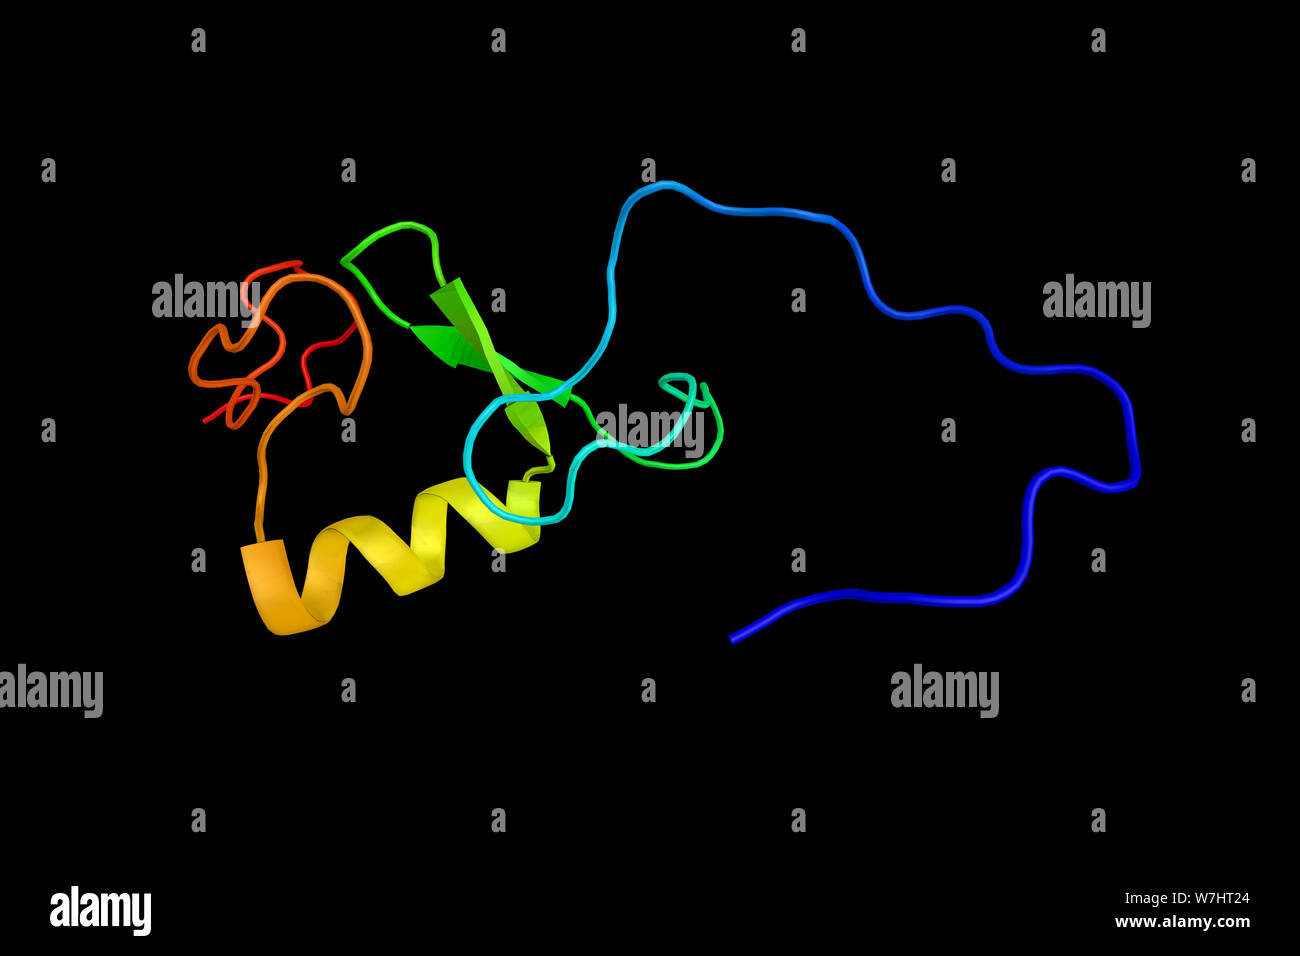 Ring finger Protein 24, ein Protein, das Trpc6 und andere transient Receptor potential Kationenkanal (Trpc) Familie Mitglieder und ist in regulatio beteiligt Stockfoto